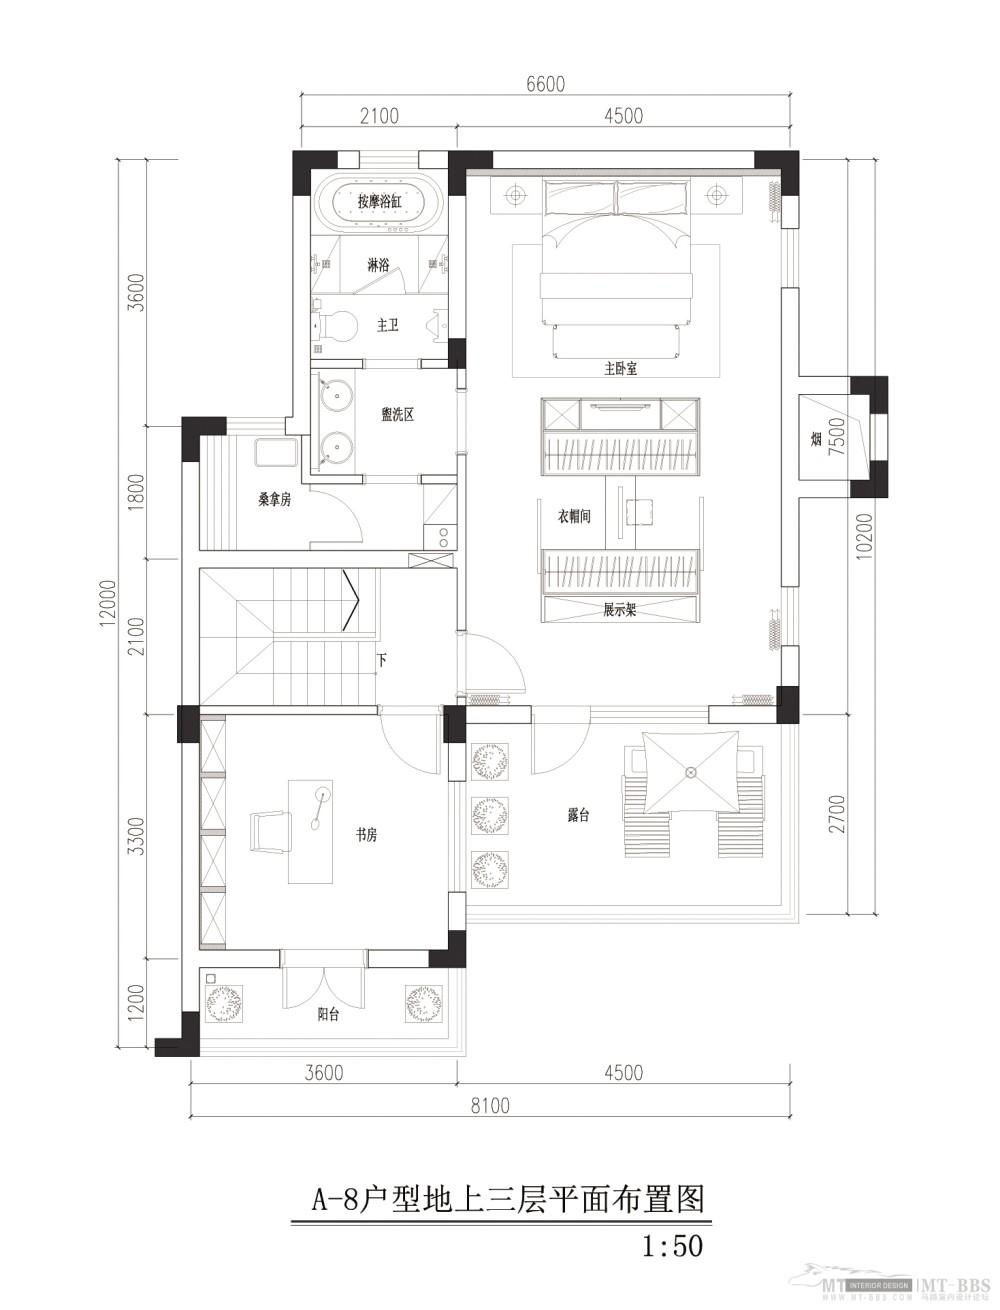 最新样板房设计_04-美式新古典地上三层.jpg